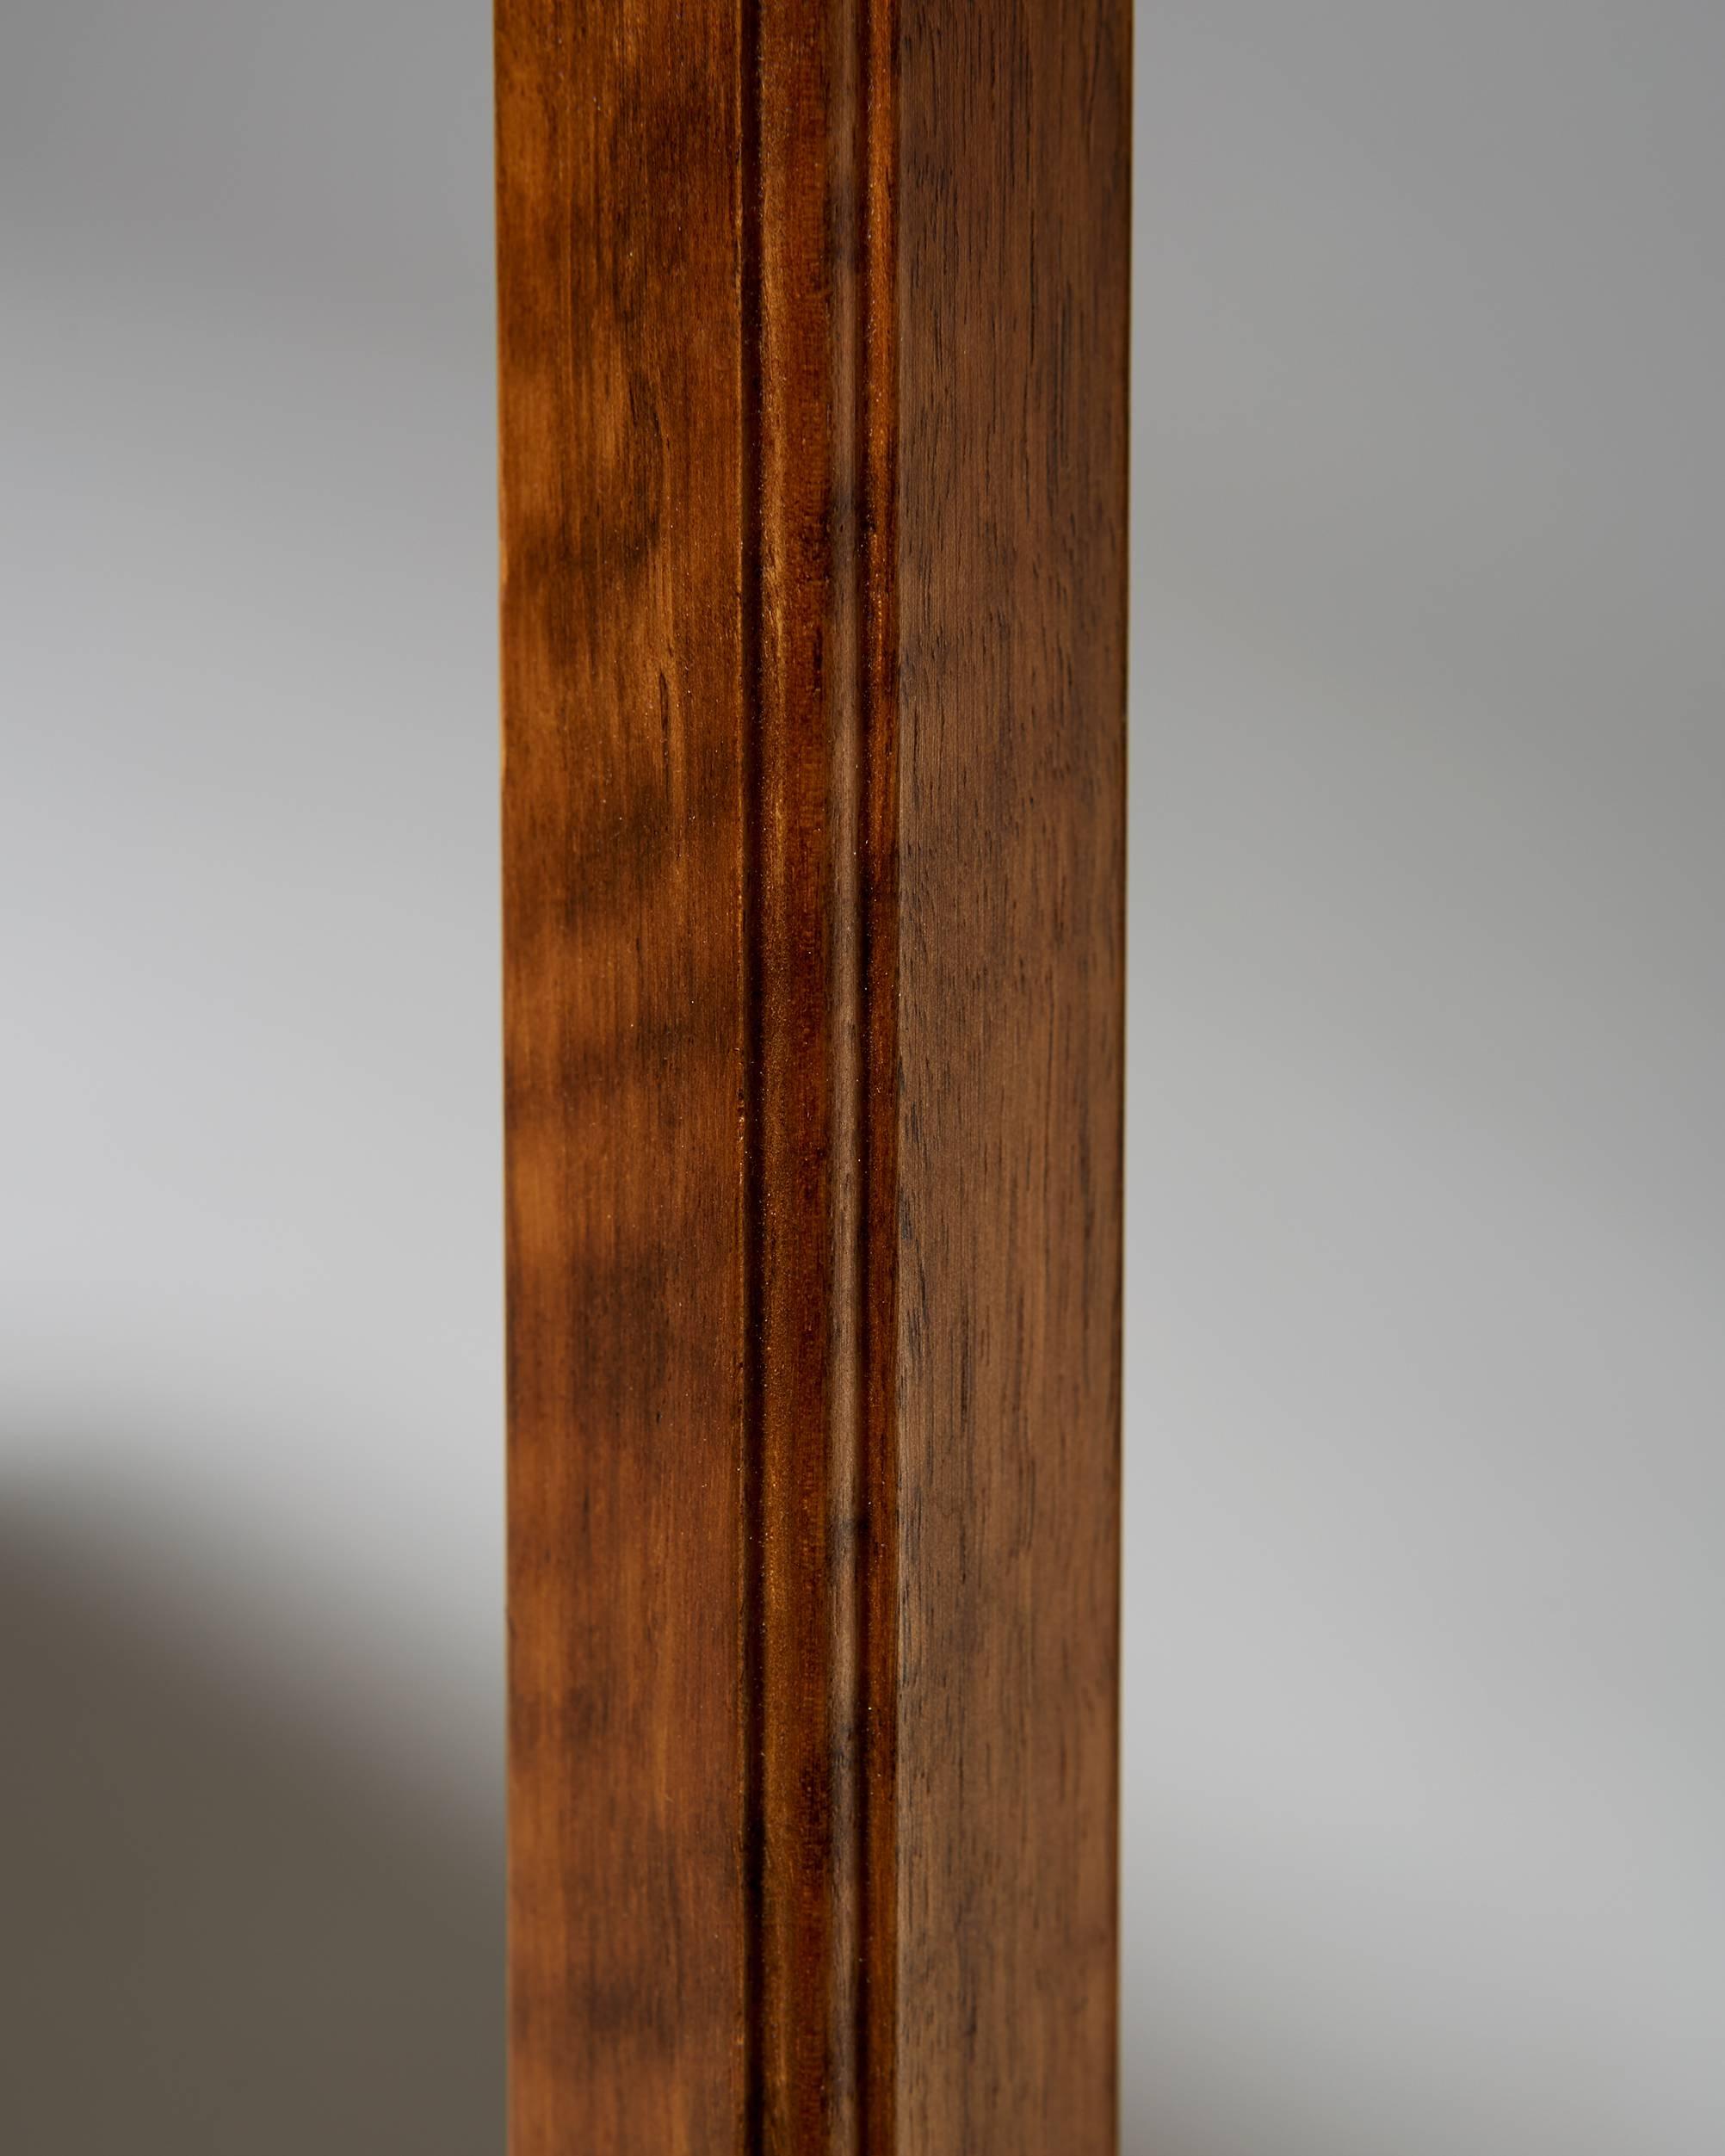 Pair of Tables/Sideboards Designed by Josef Frank for Svenskt Tenn, Sweden 1